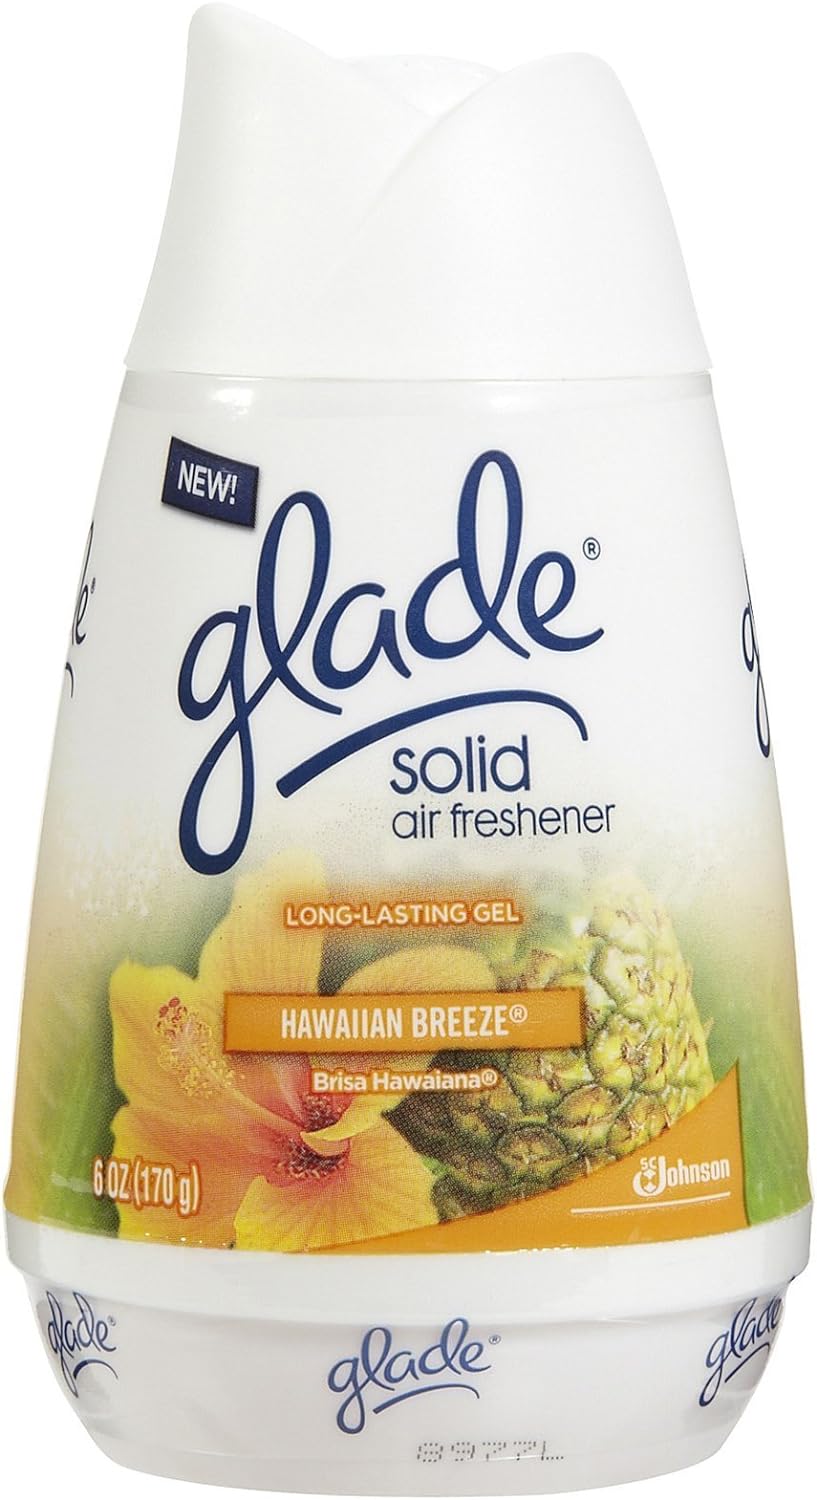 Glade Solid Air Freshener - Hawaiian Breeze - 6 oz